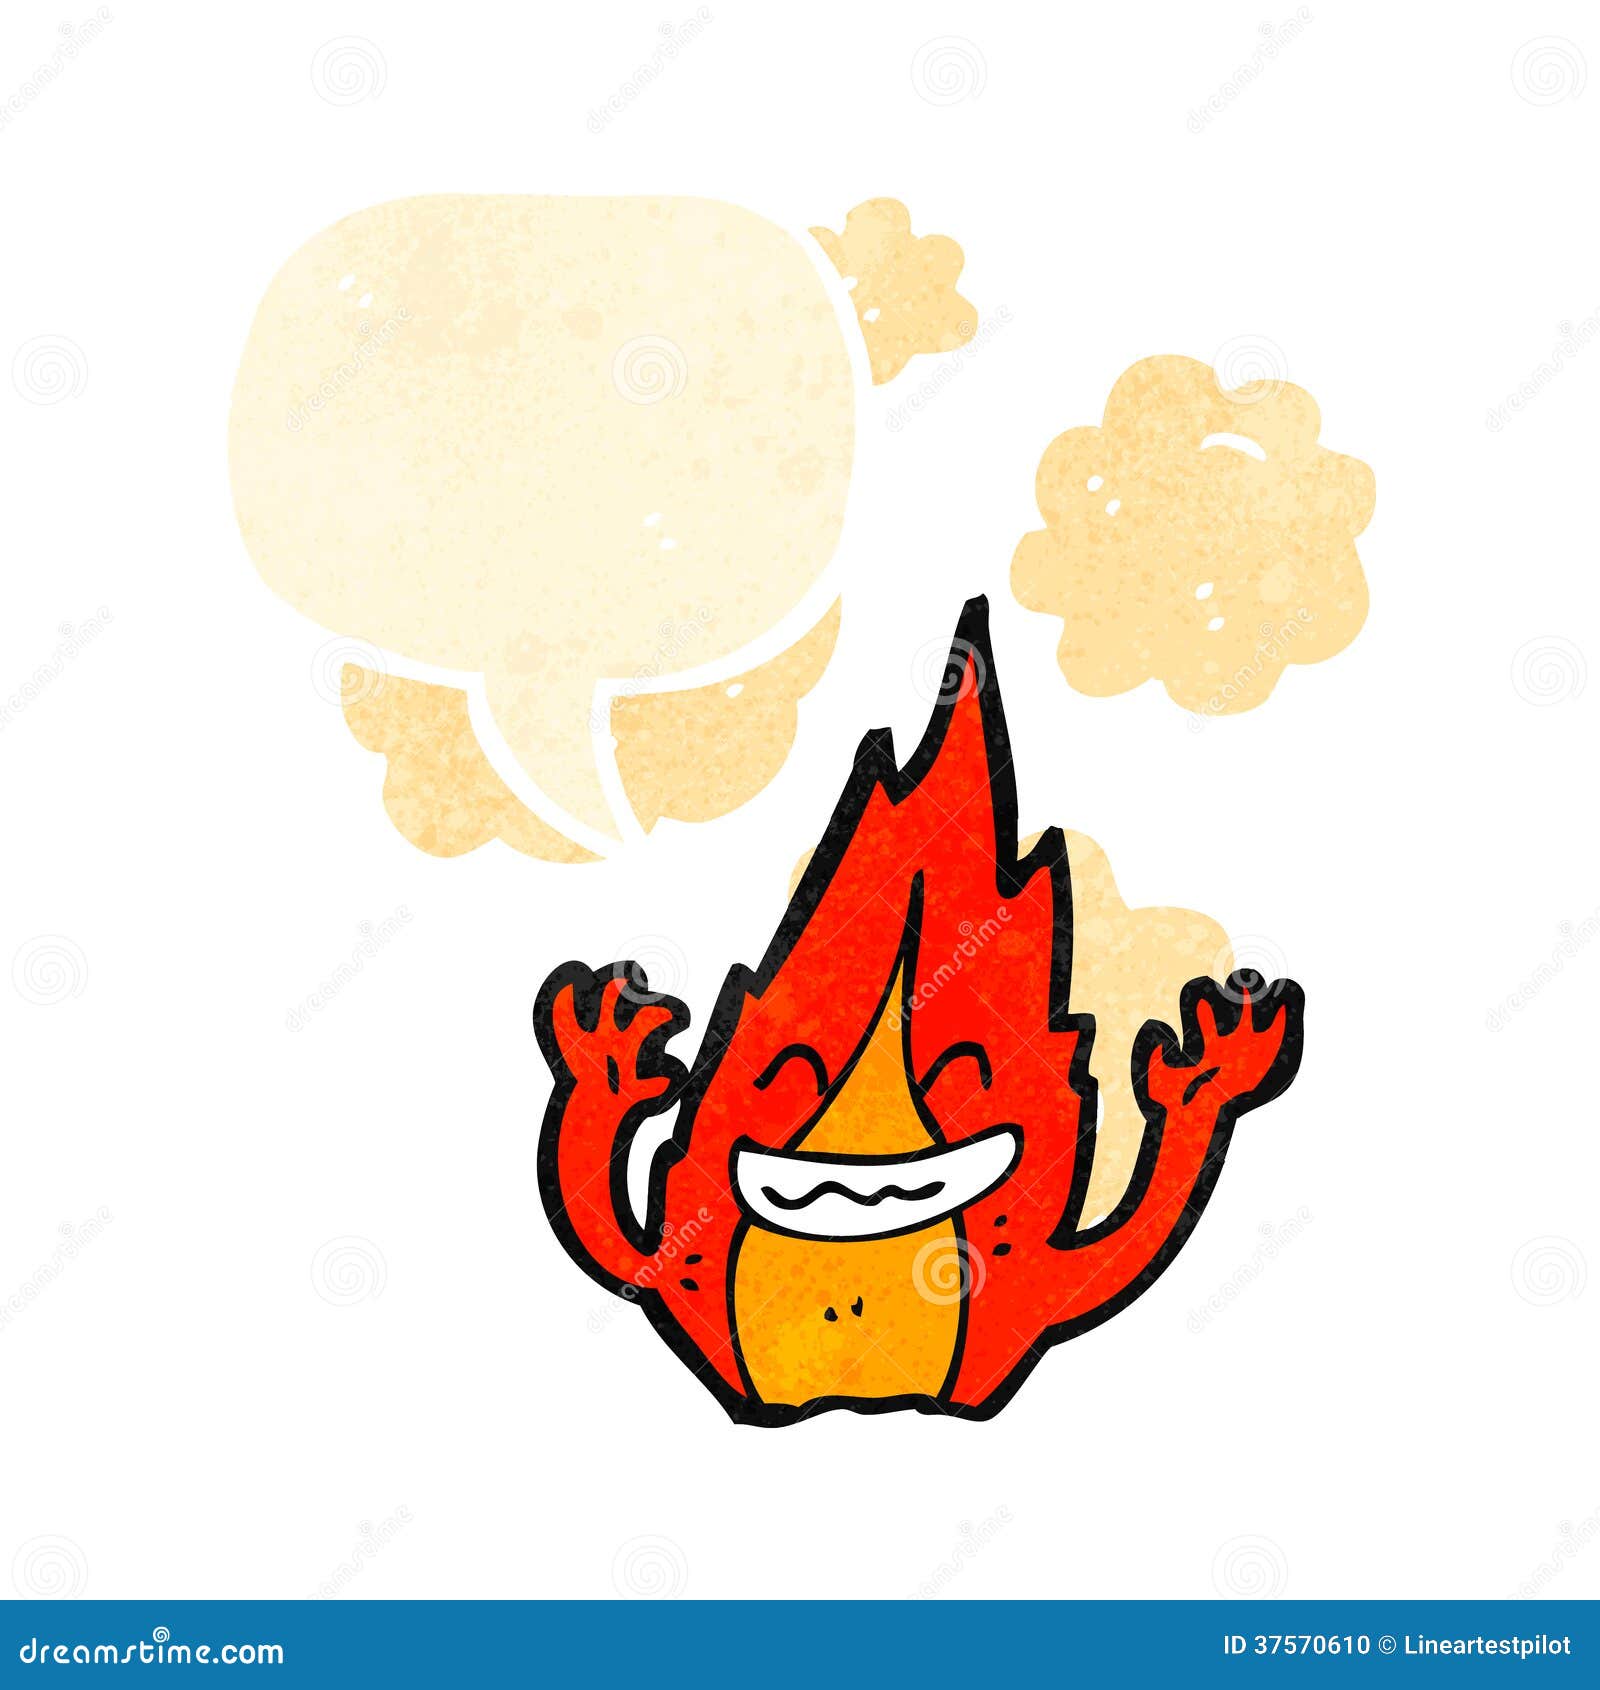 Cartoon Talking Fire Symbol Stock Vector - Illustration of drawn ...